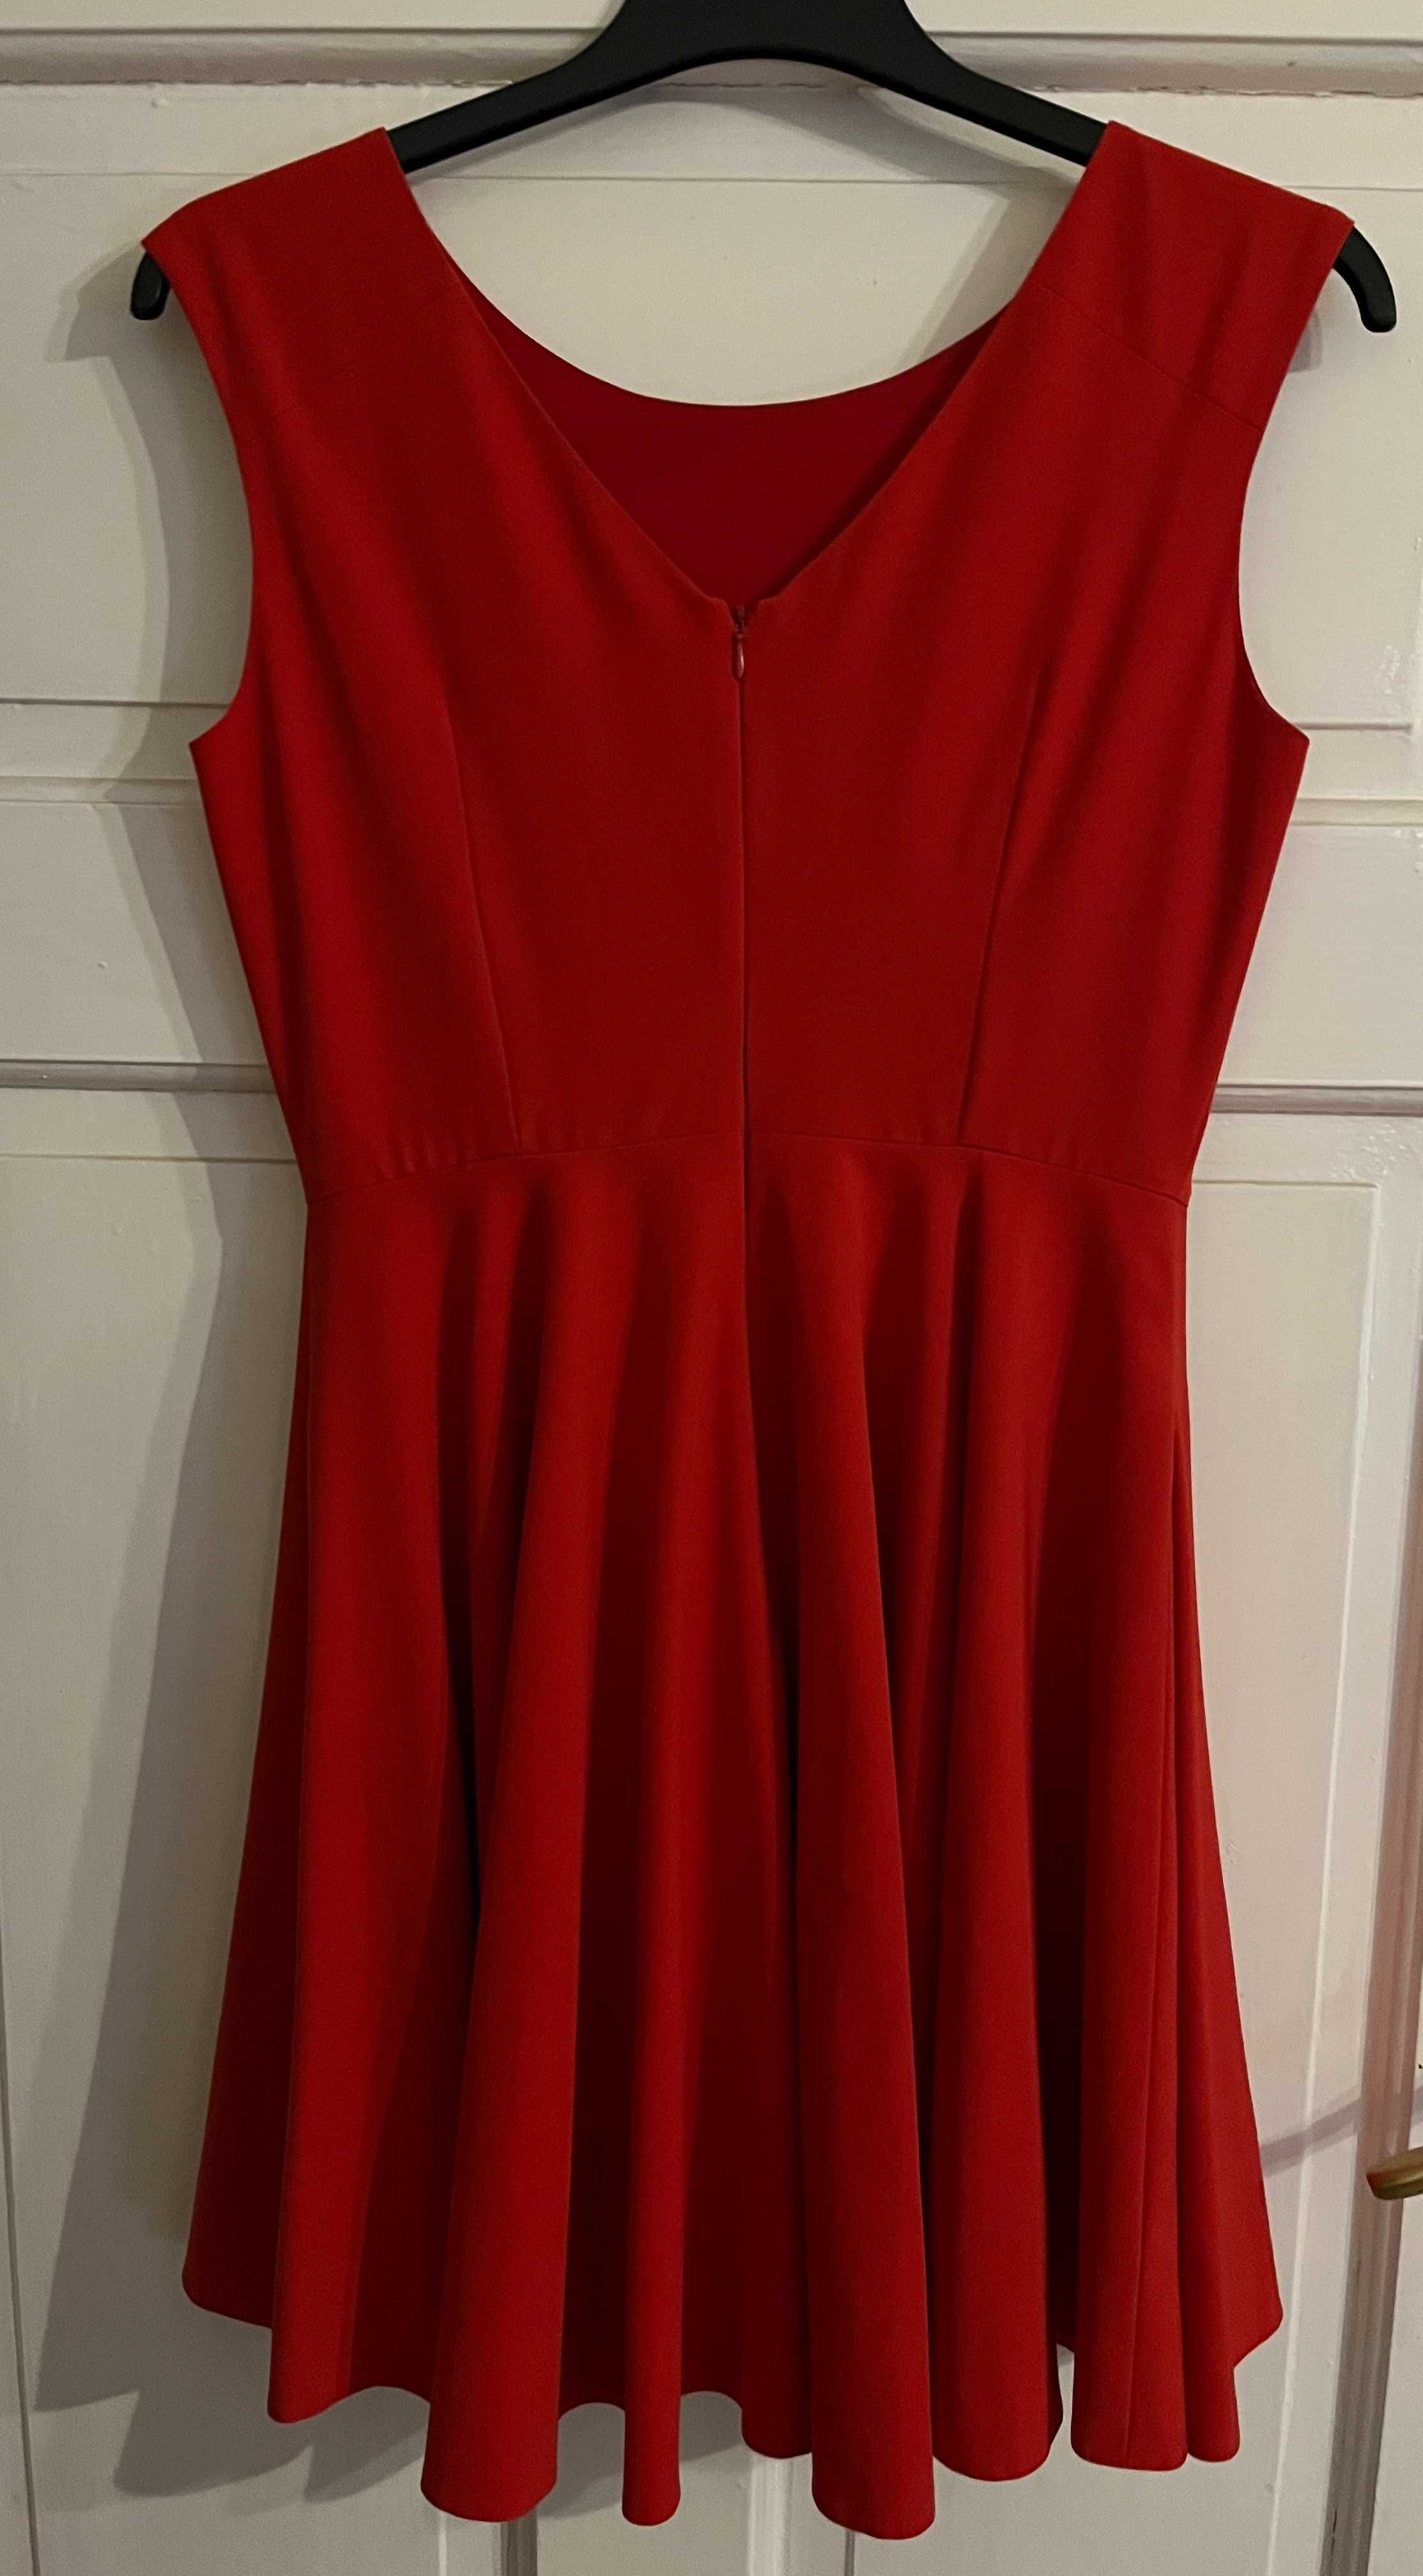 Sukienka czerwona rozmiar 40